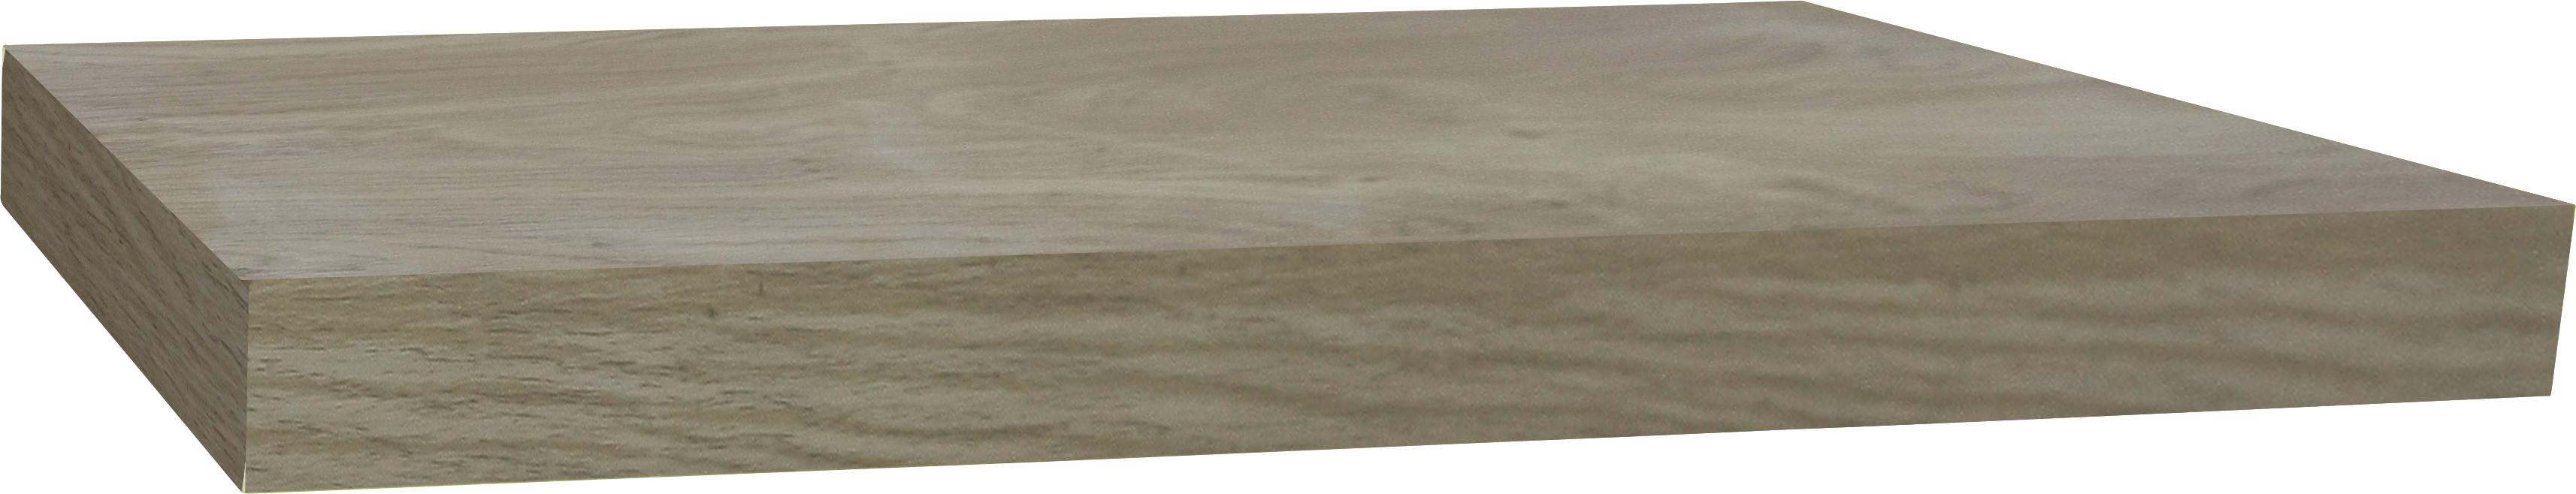 Wandboard Simple B:80cm, Sonoma Eiche Dekor - Eichefarben, MODERN, Holzwerkstoff (80/3,8/23,5cm)